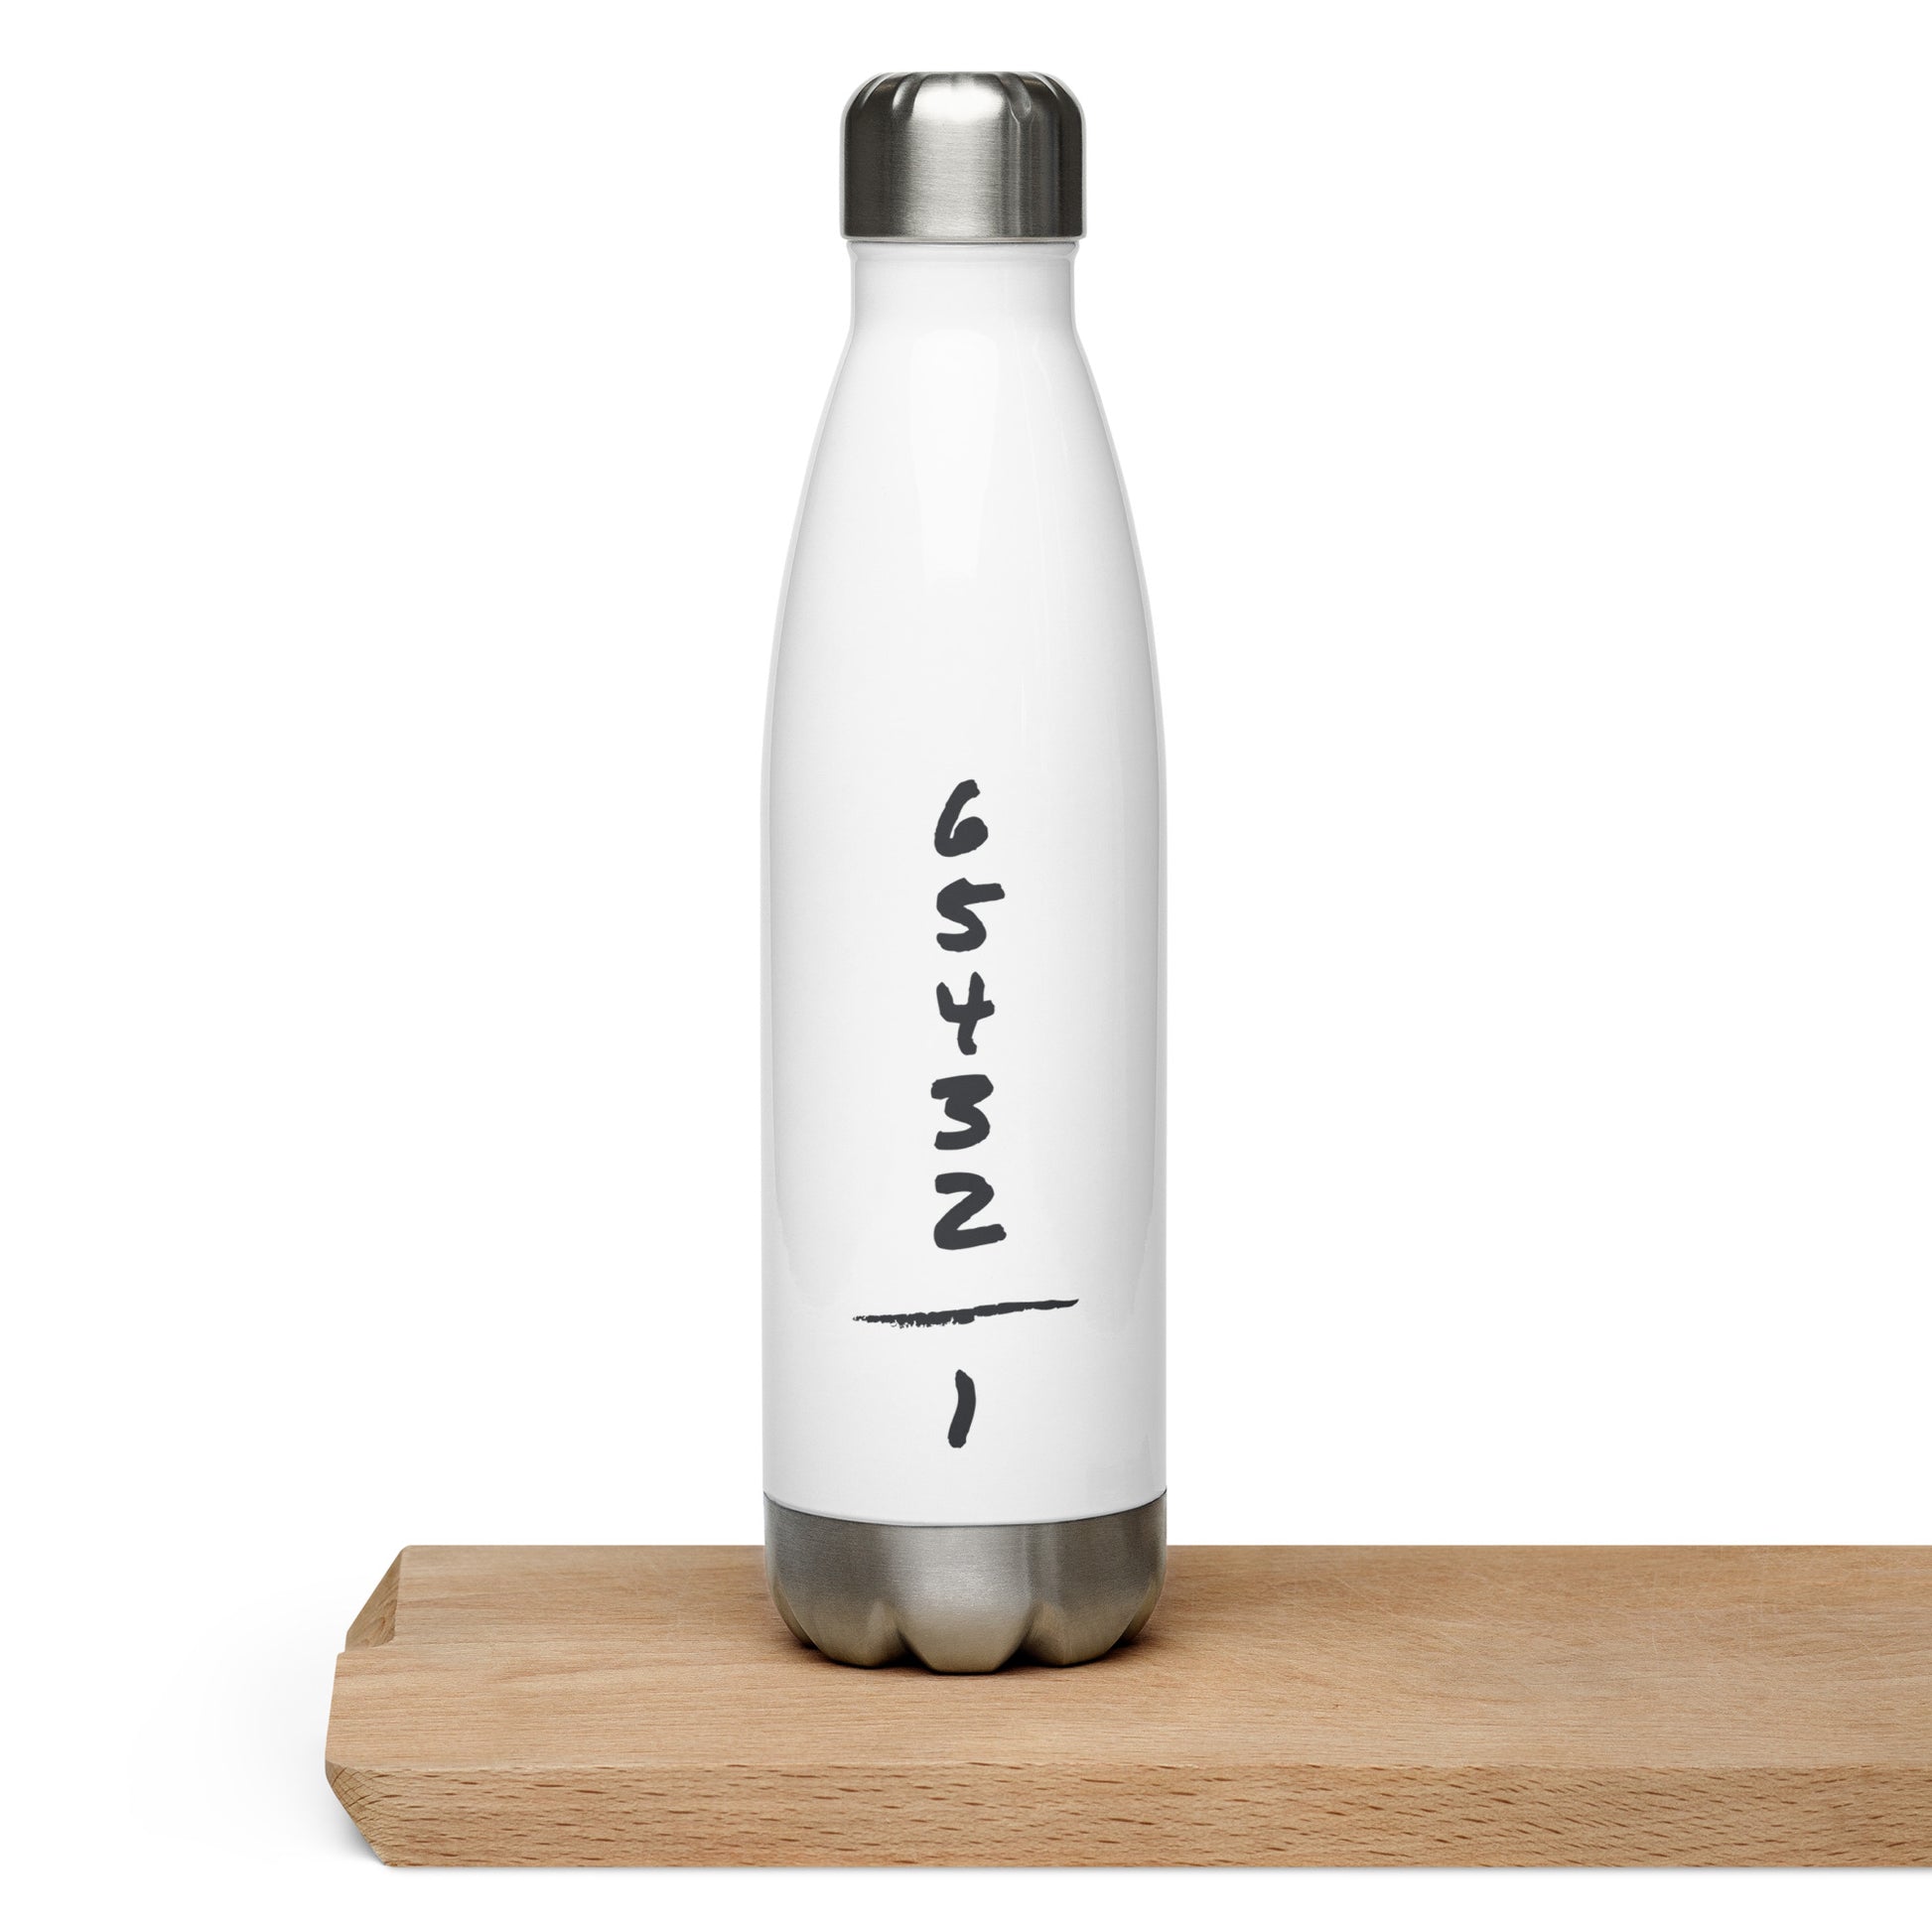 Trinkflasche, weiß mit metallfarbenem Boden und Deckel, schwarzer Aufdruck "One down - five up"